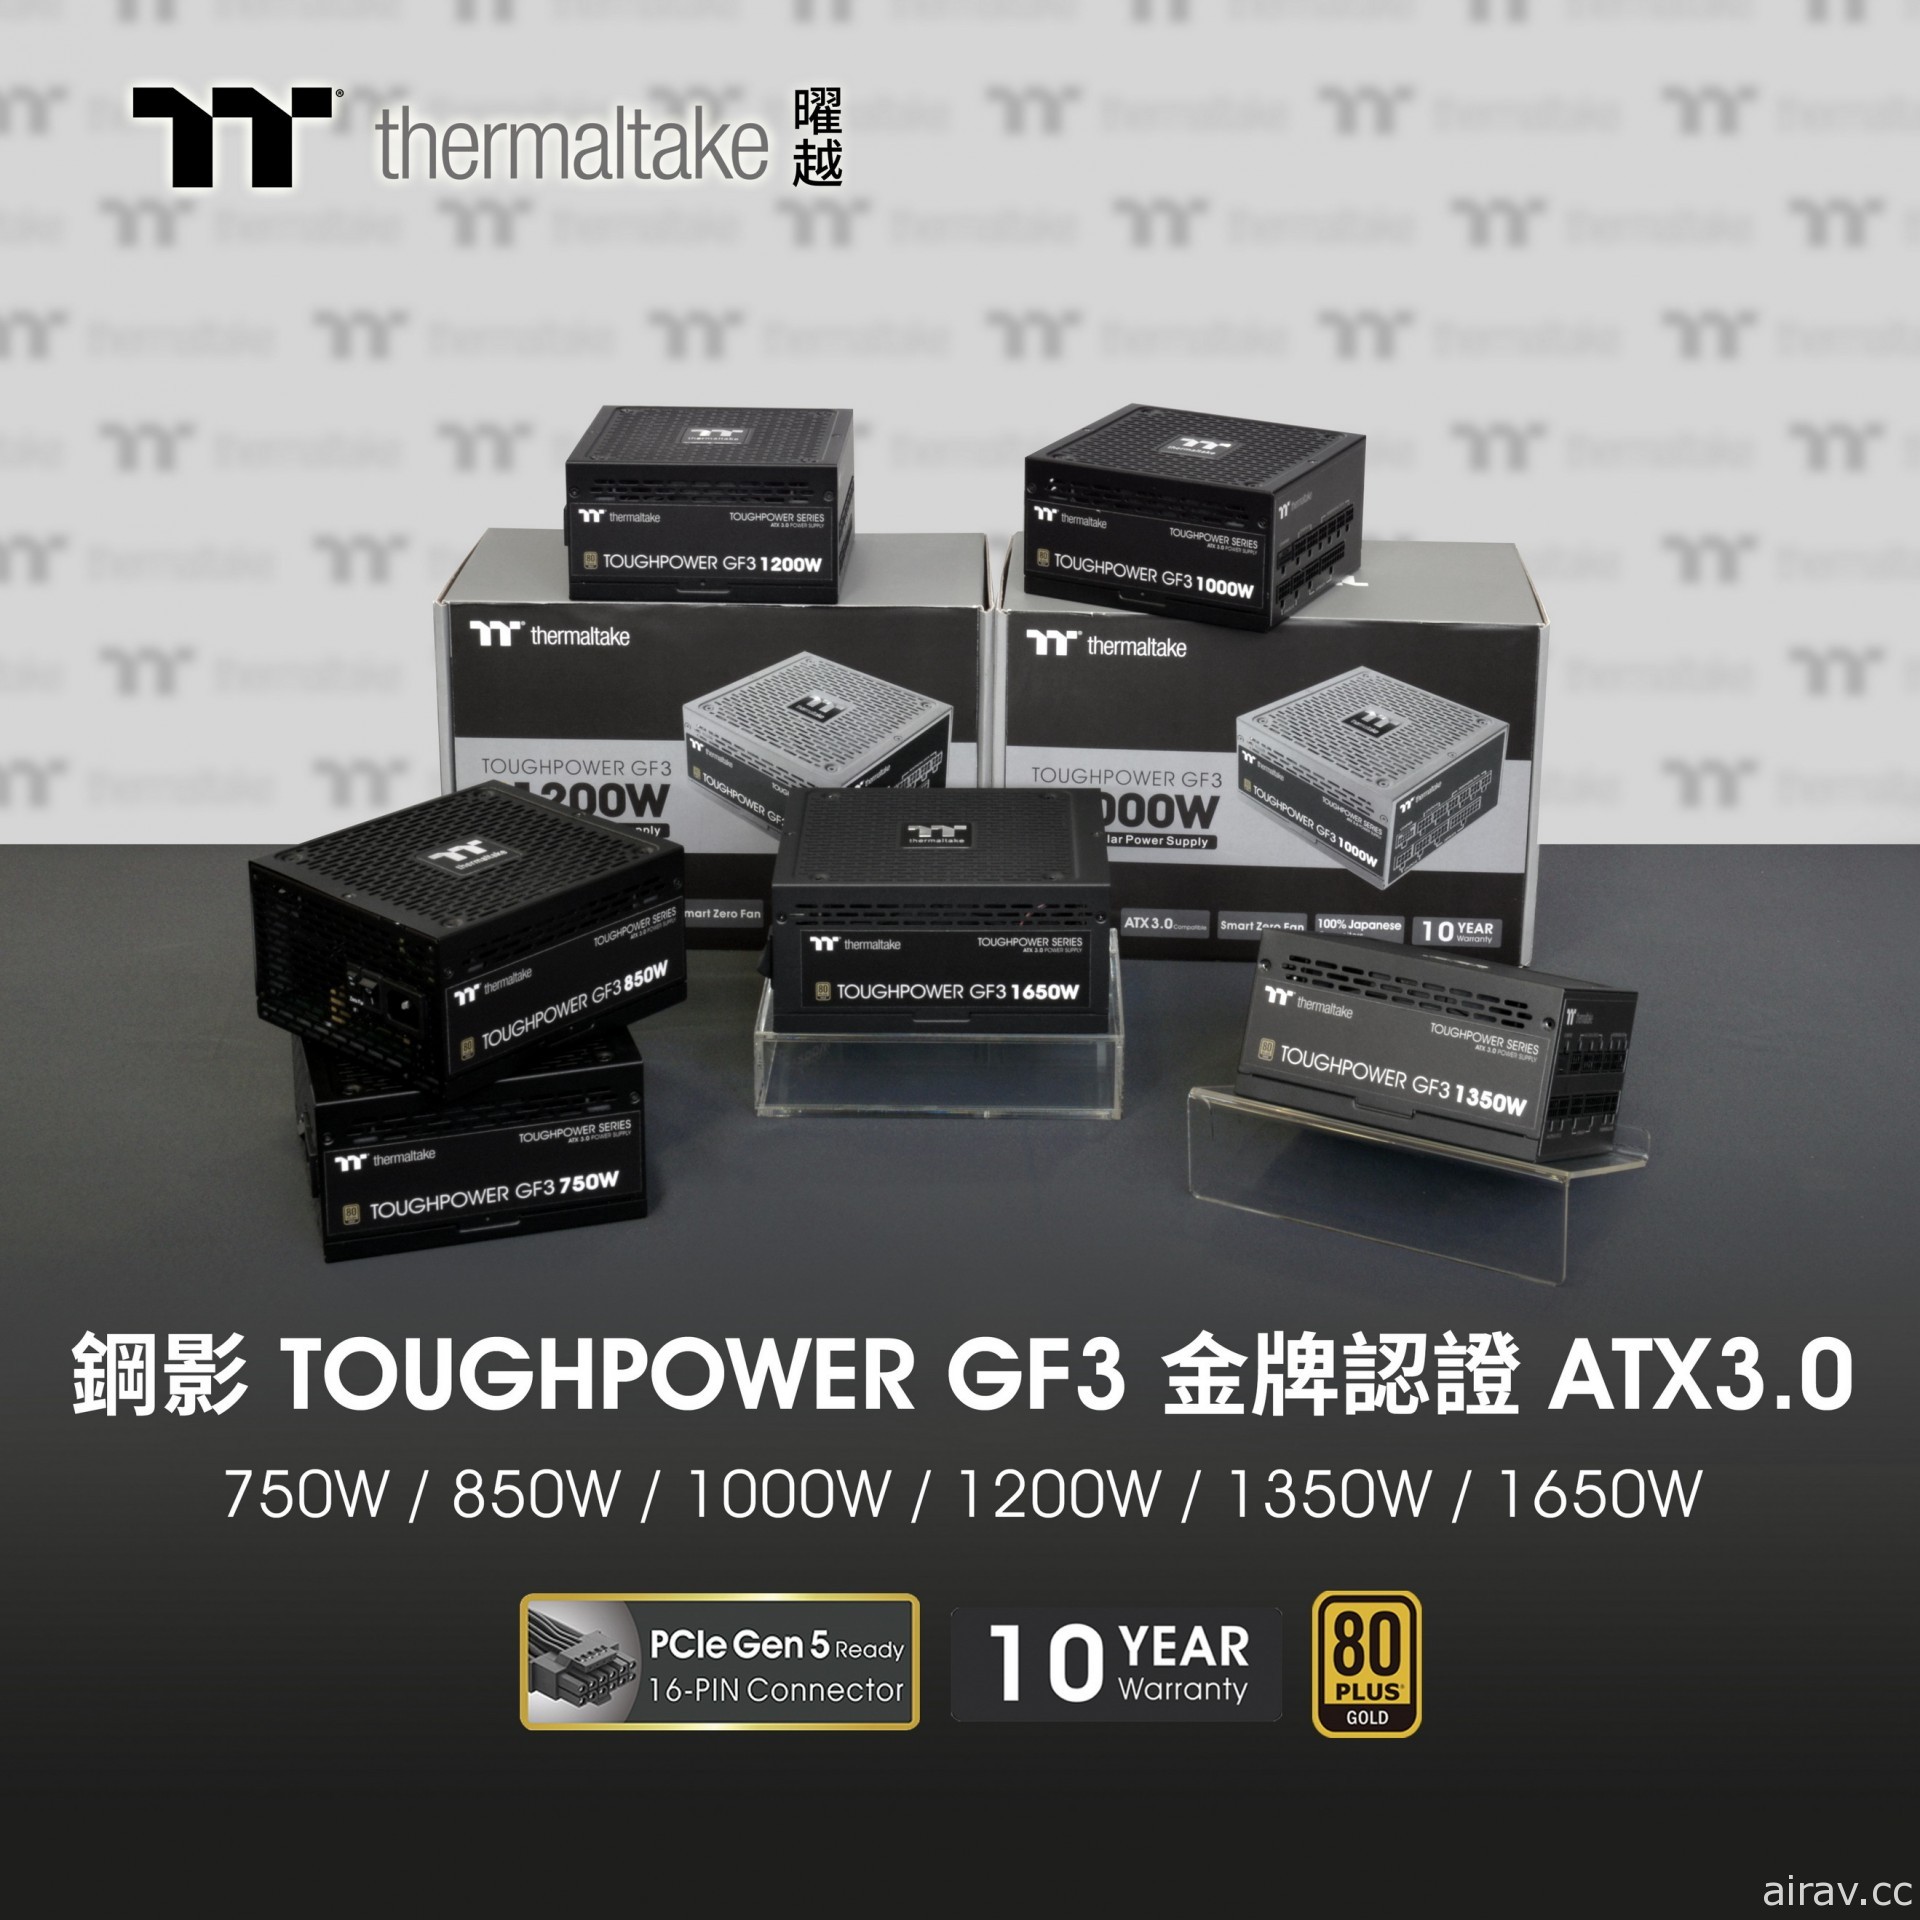 曜越推出全新 Toughpower GF3、iRGB、SFX 系列电源供应器